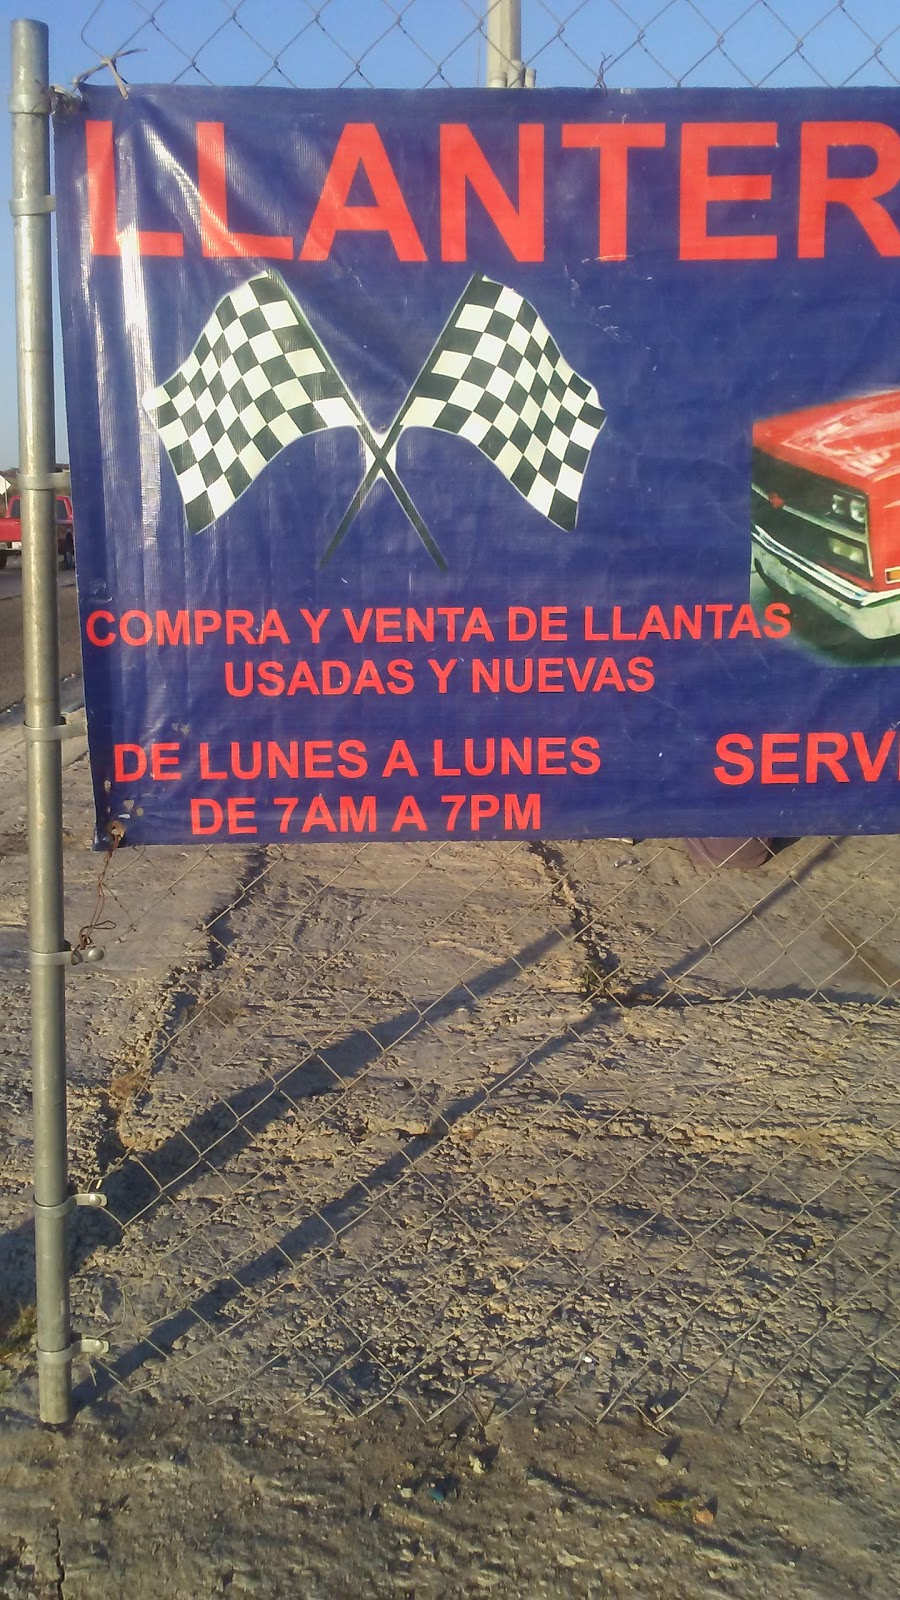 Baja Tires Llantas Y Servicios | 2000 Km. frente Fracc., De Los Venados 18, Cañadas del Florido, 22725 Tijuana, B.C., Mexico | Phone: 664 287 4683